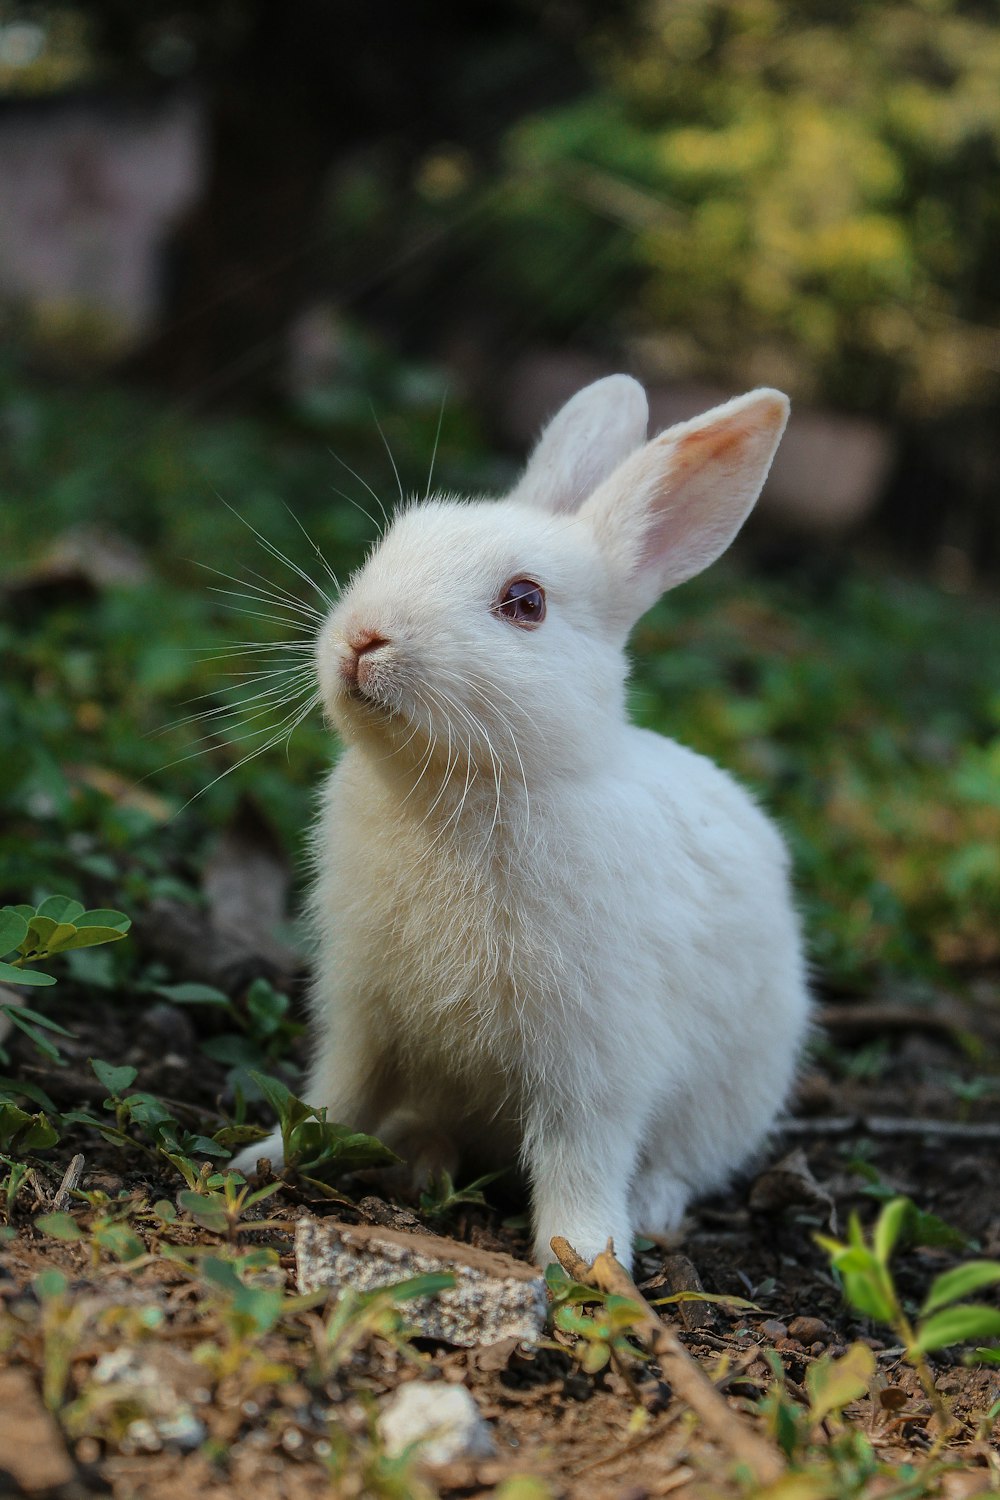 Weißes Kaninchen auf grünem Gras